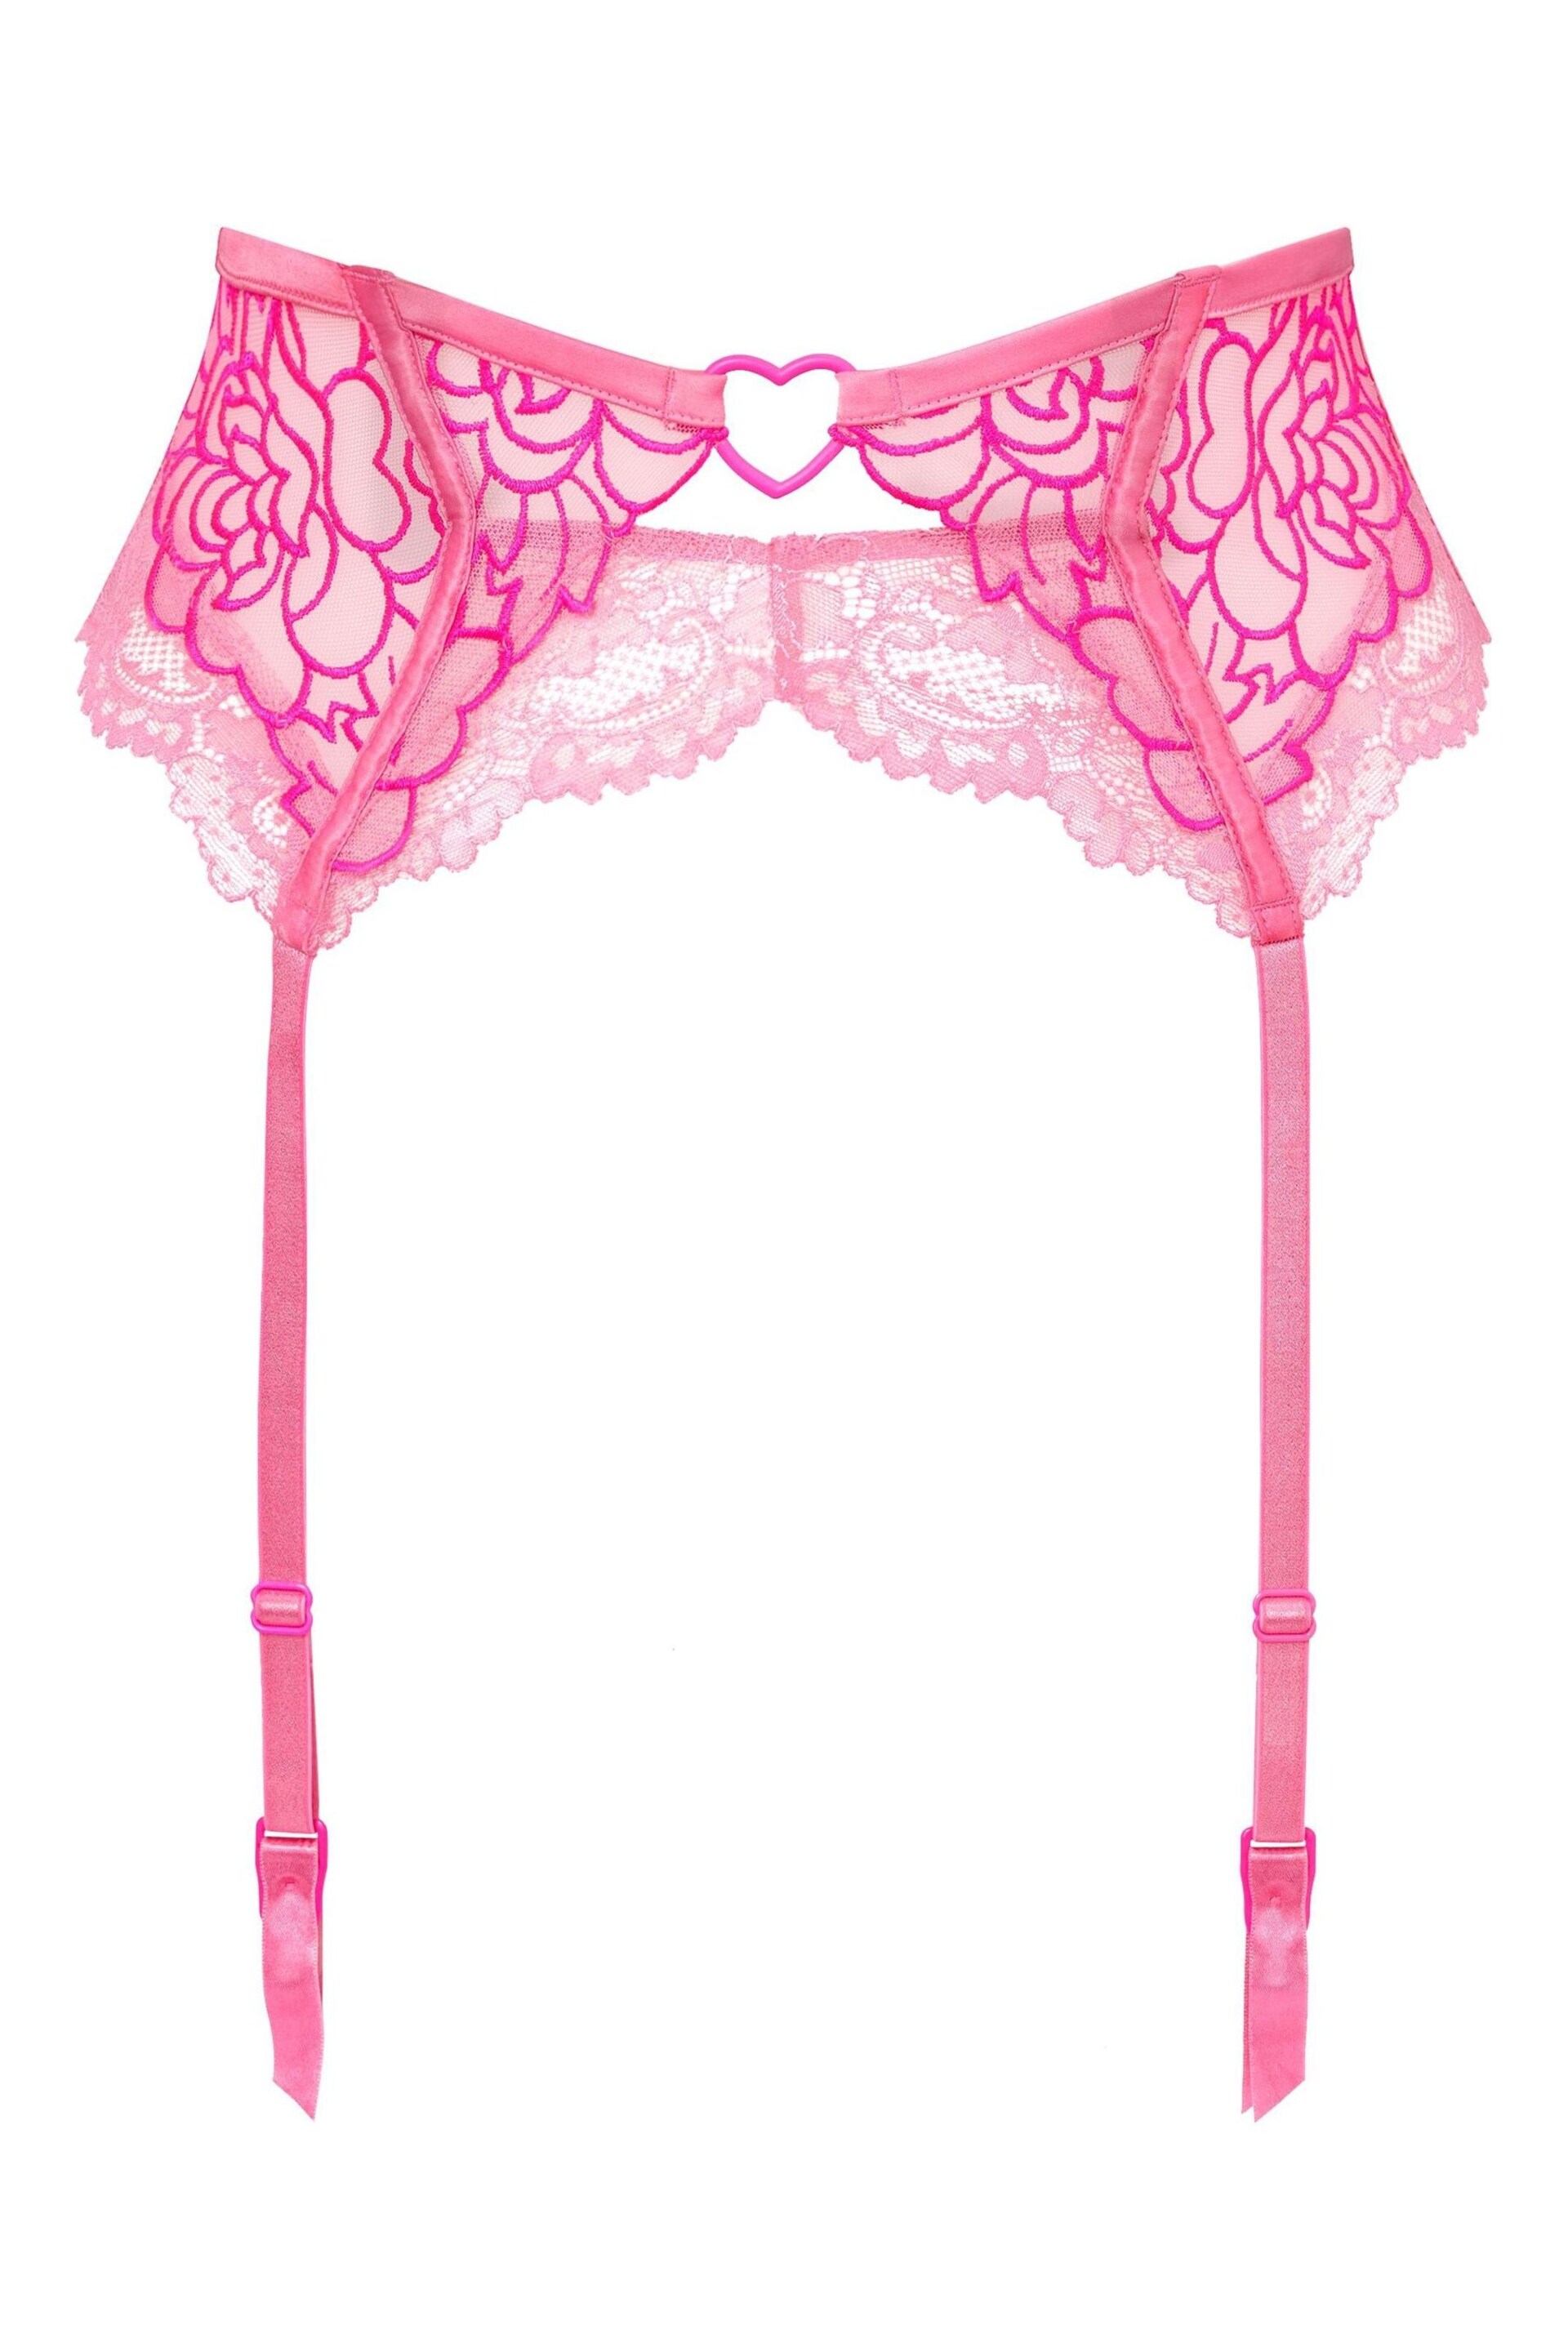 Ann Summers Pink New Romance Waspie Suspender Belt - Image 4 of 4